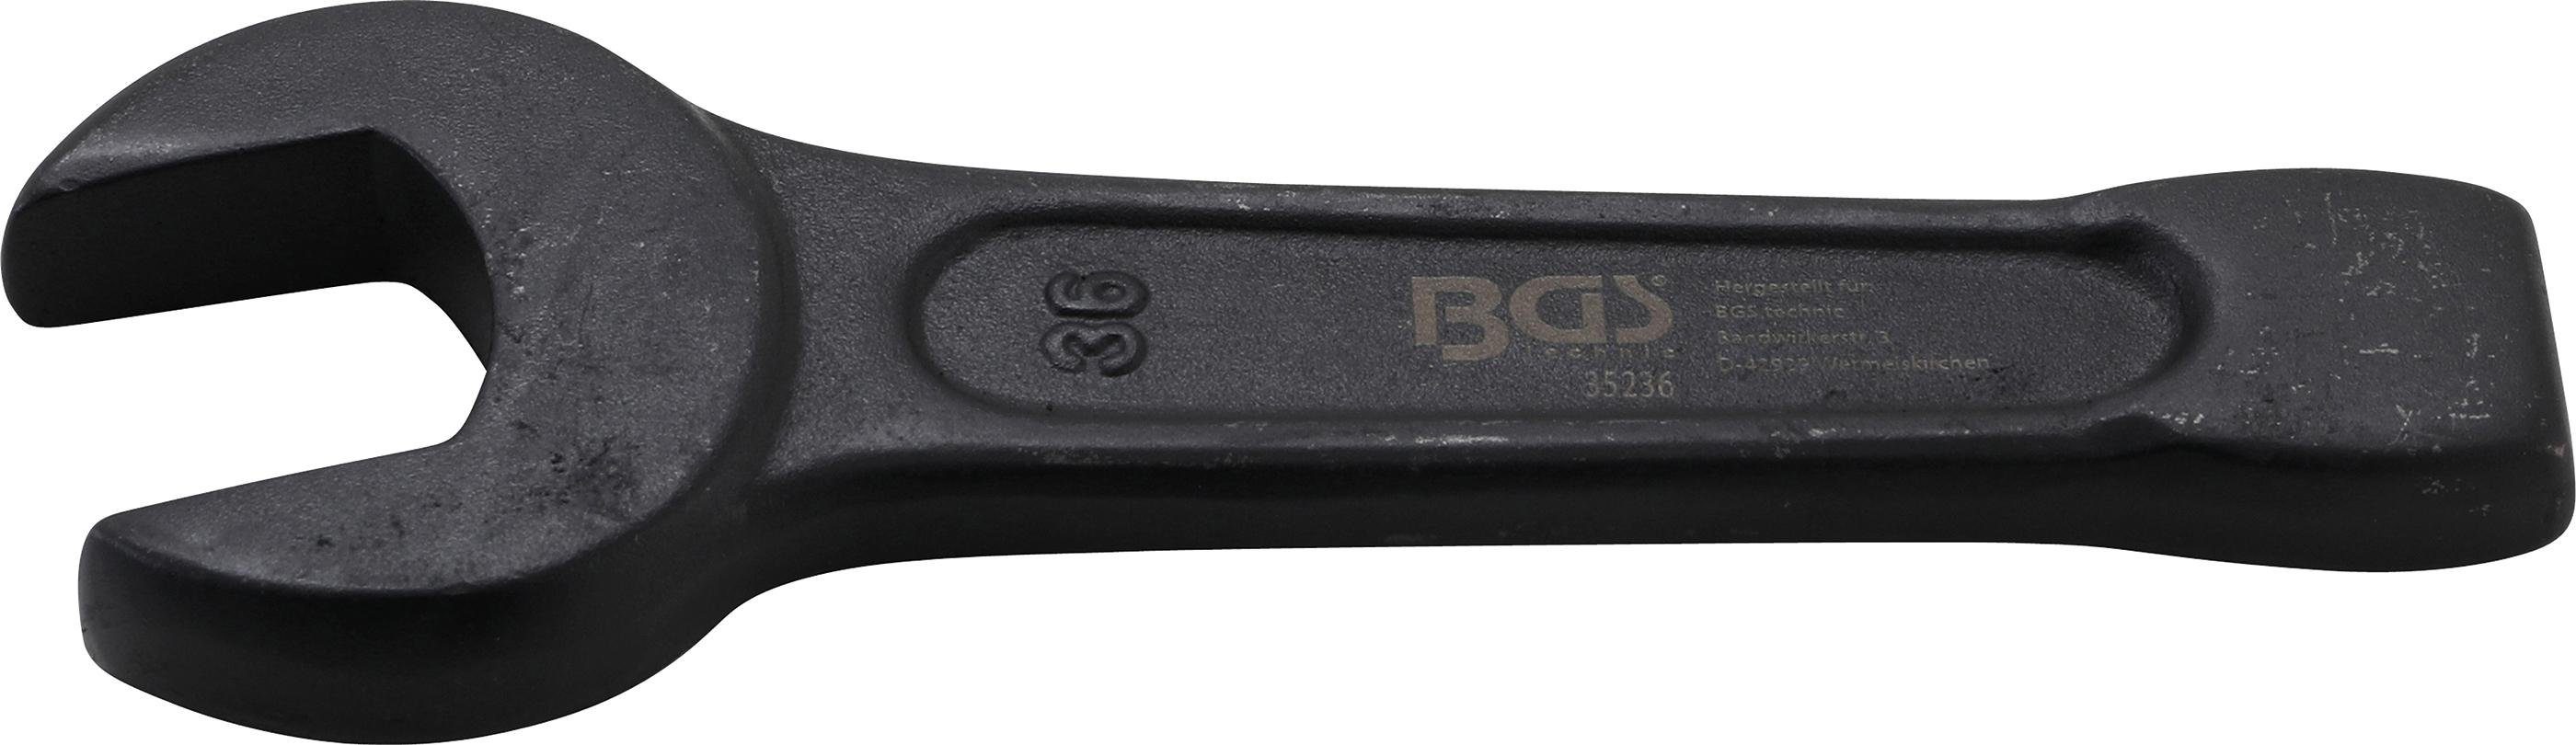 BGS technic Maulschlüssel Schlag-Maulschlüssel, SW 36 mm